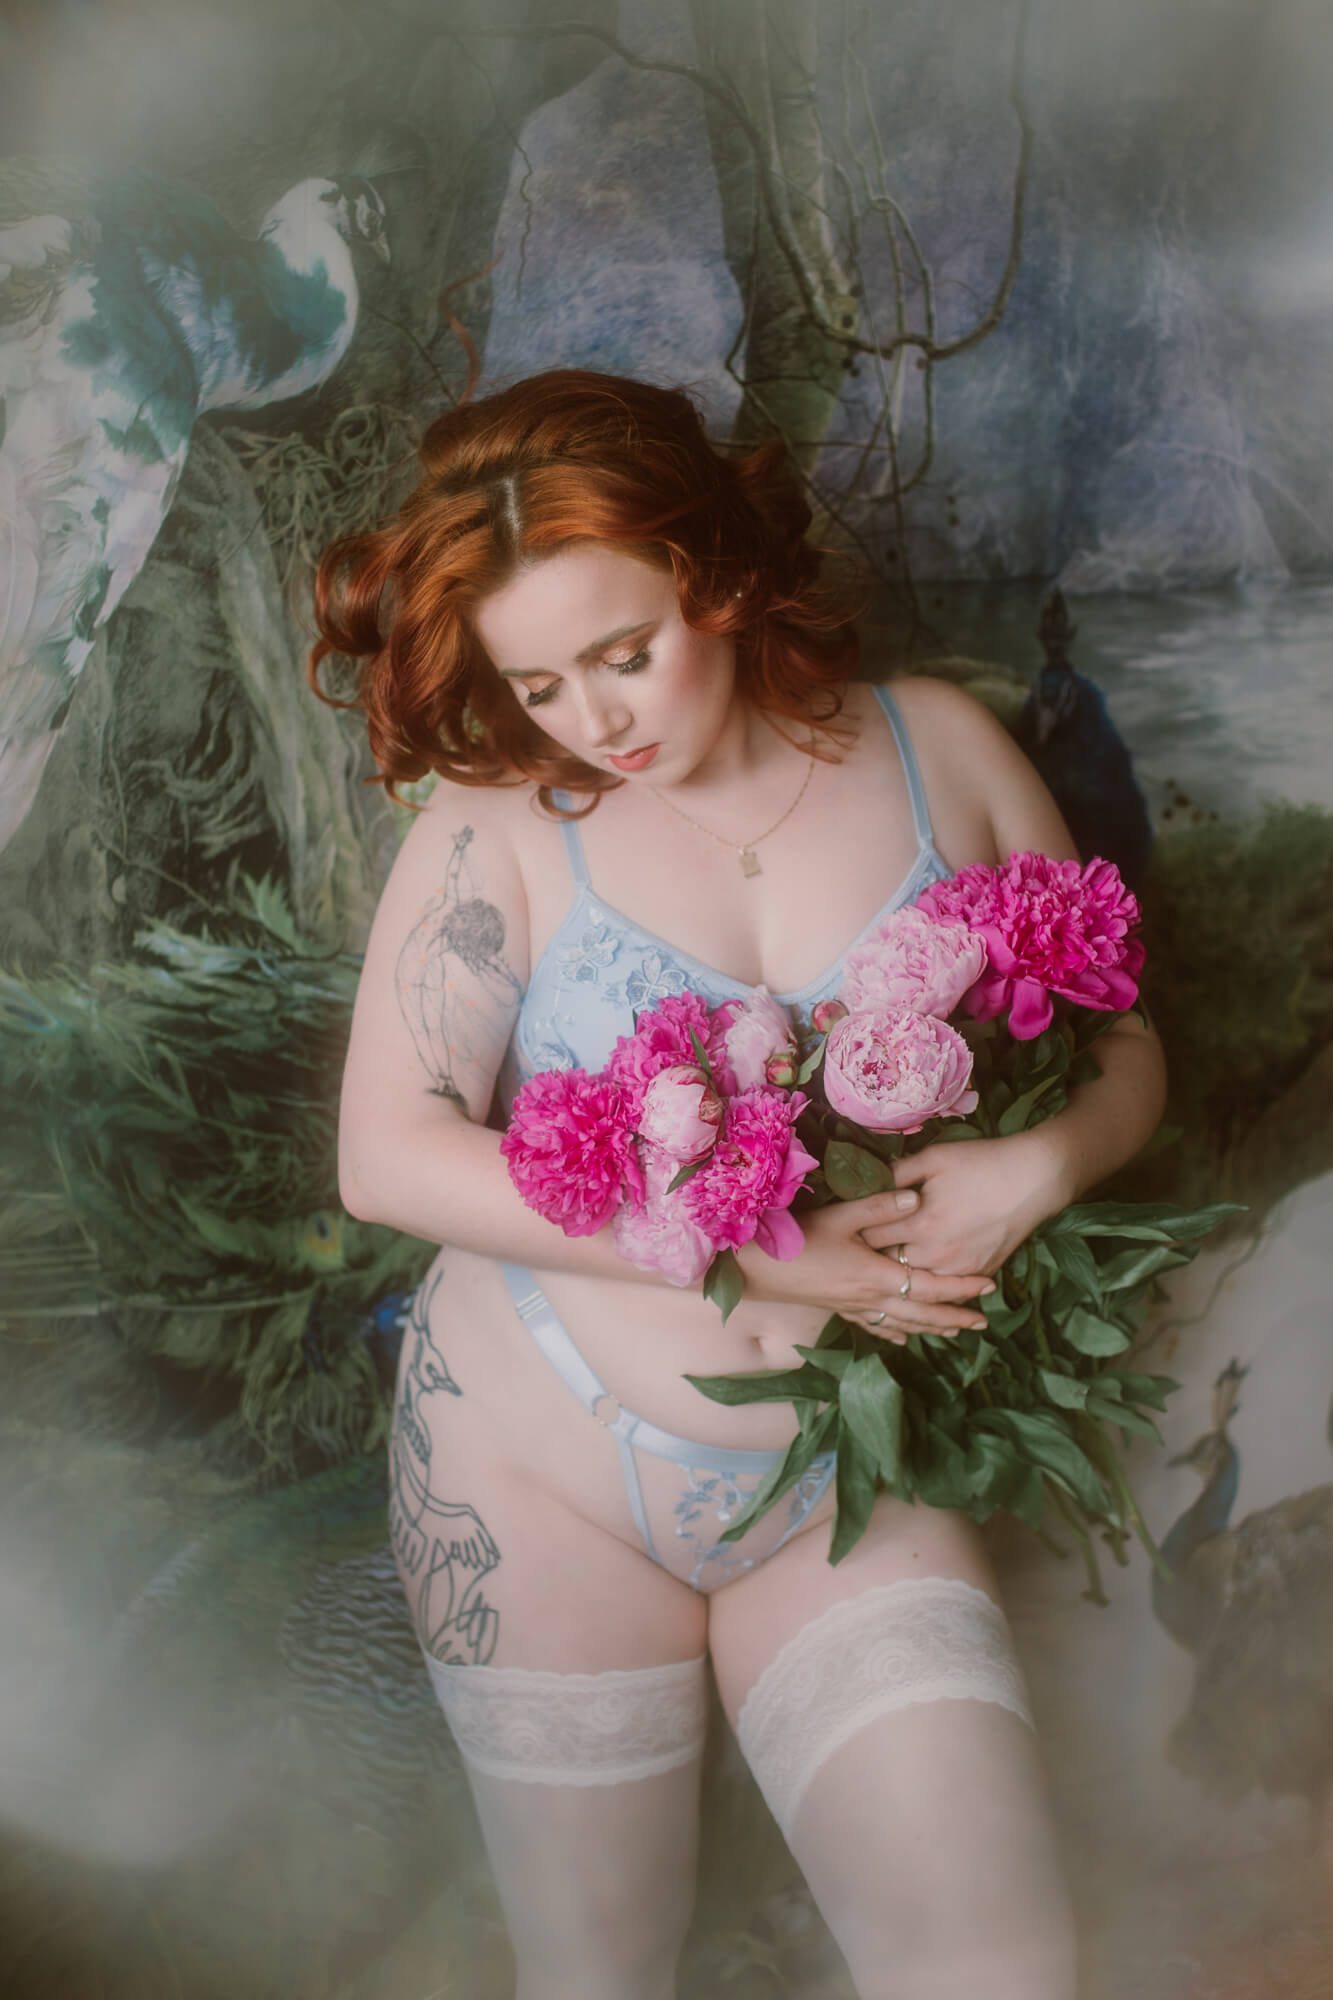 Fotografia sensualna, na której modelka w romantycznej bieliźnie i z kwiatami w rękach pozuje na abstrakcyjnym tle